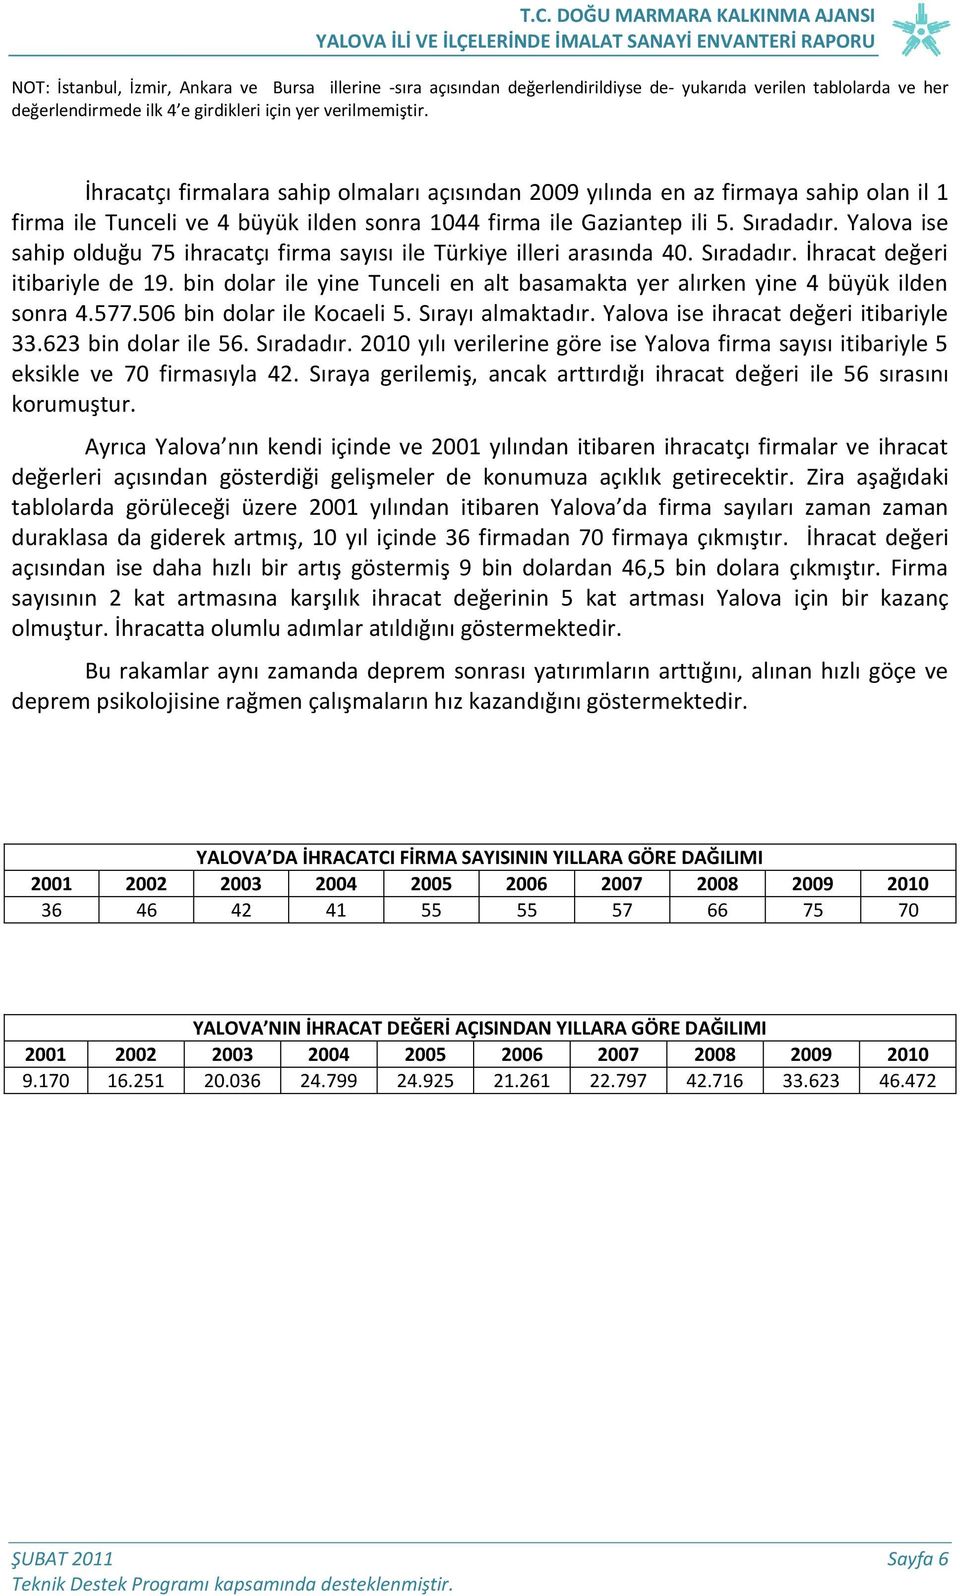 Yalova ise sahip olduğu 75 ihracatçı firma sayısı ile Türkiye illeri arasında 40. Sıradadır. İhracat değeri itibariyle de 19.